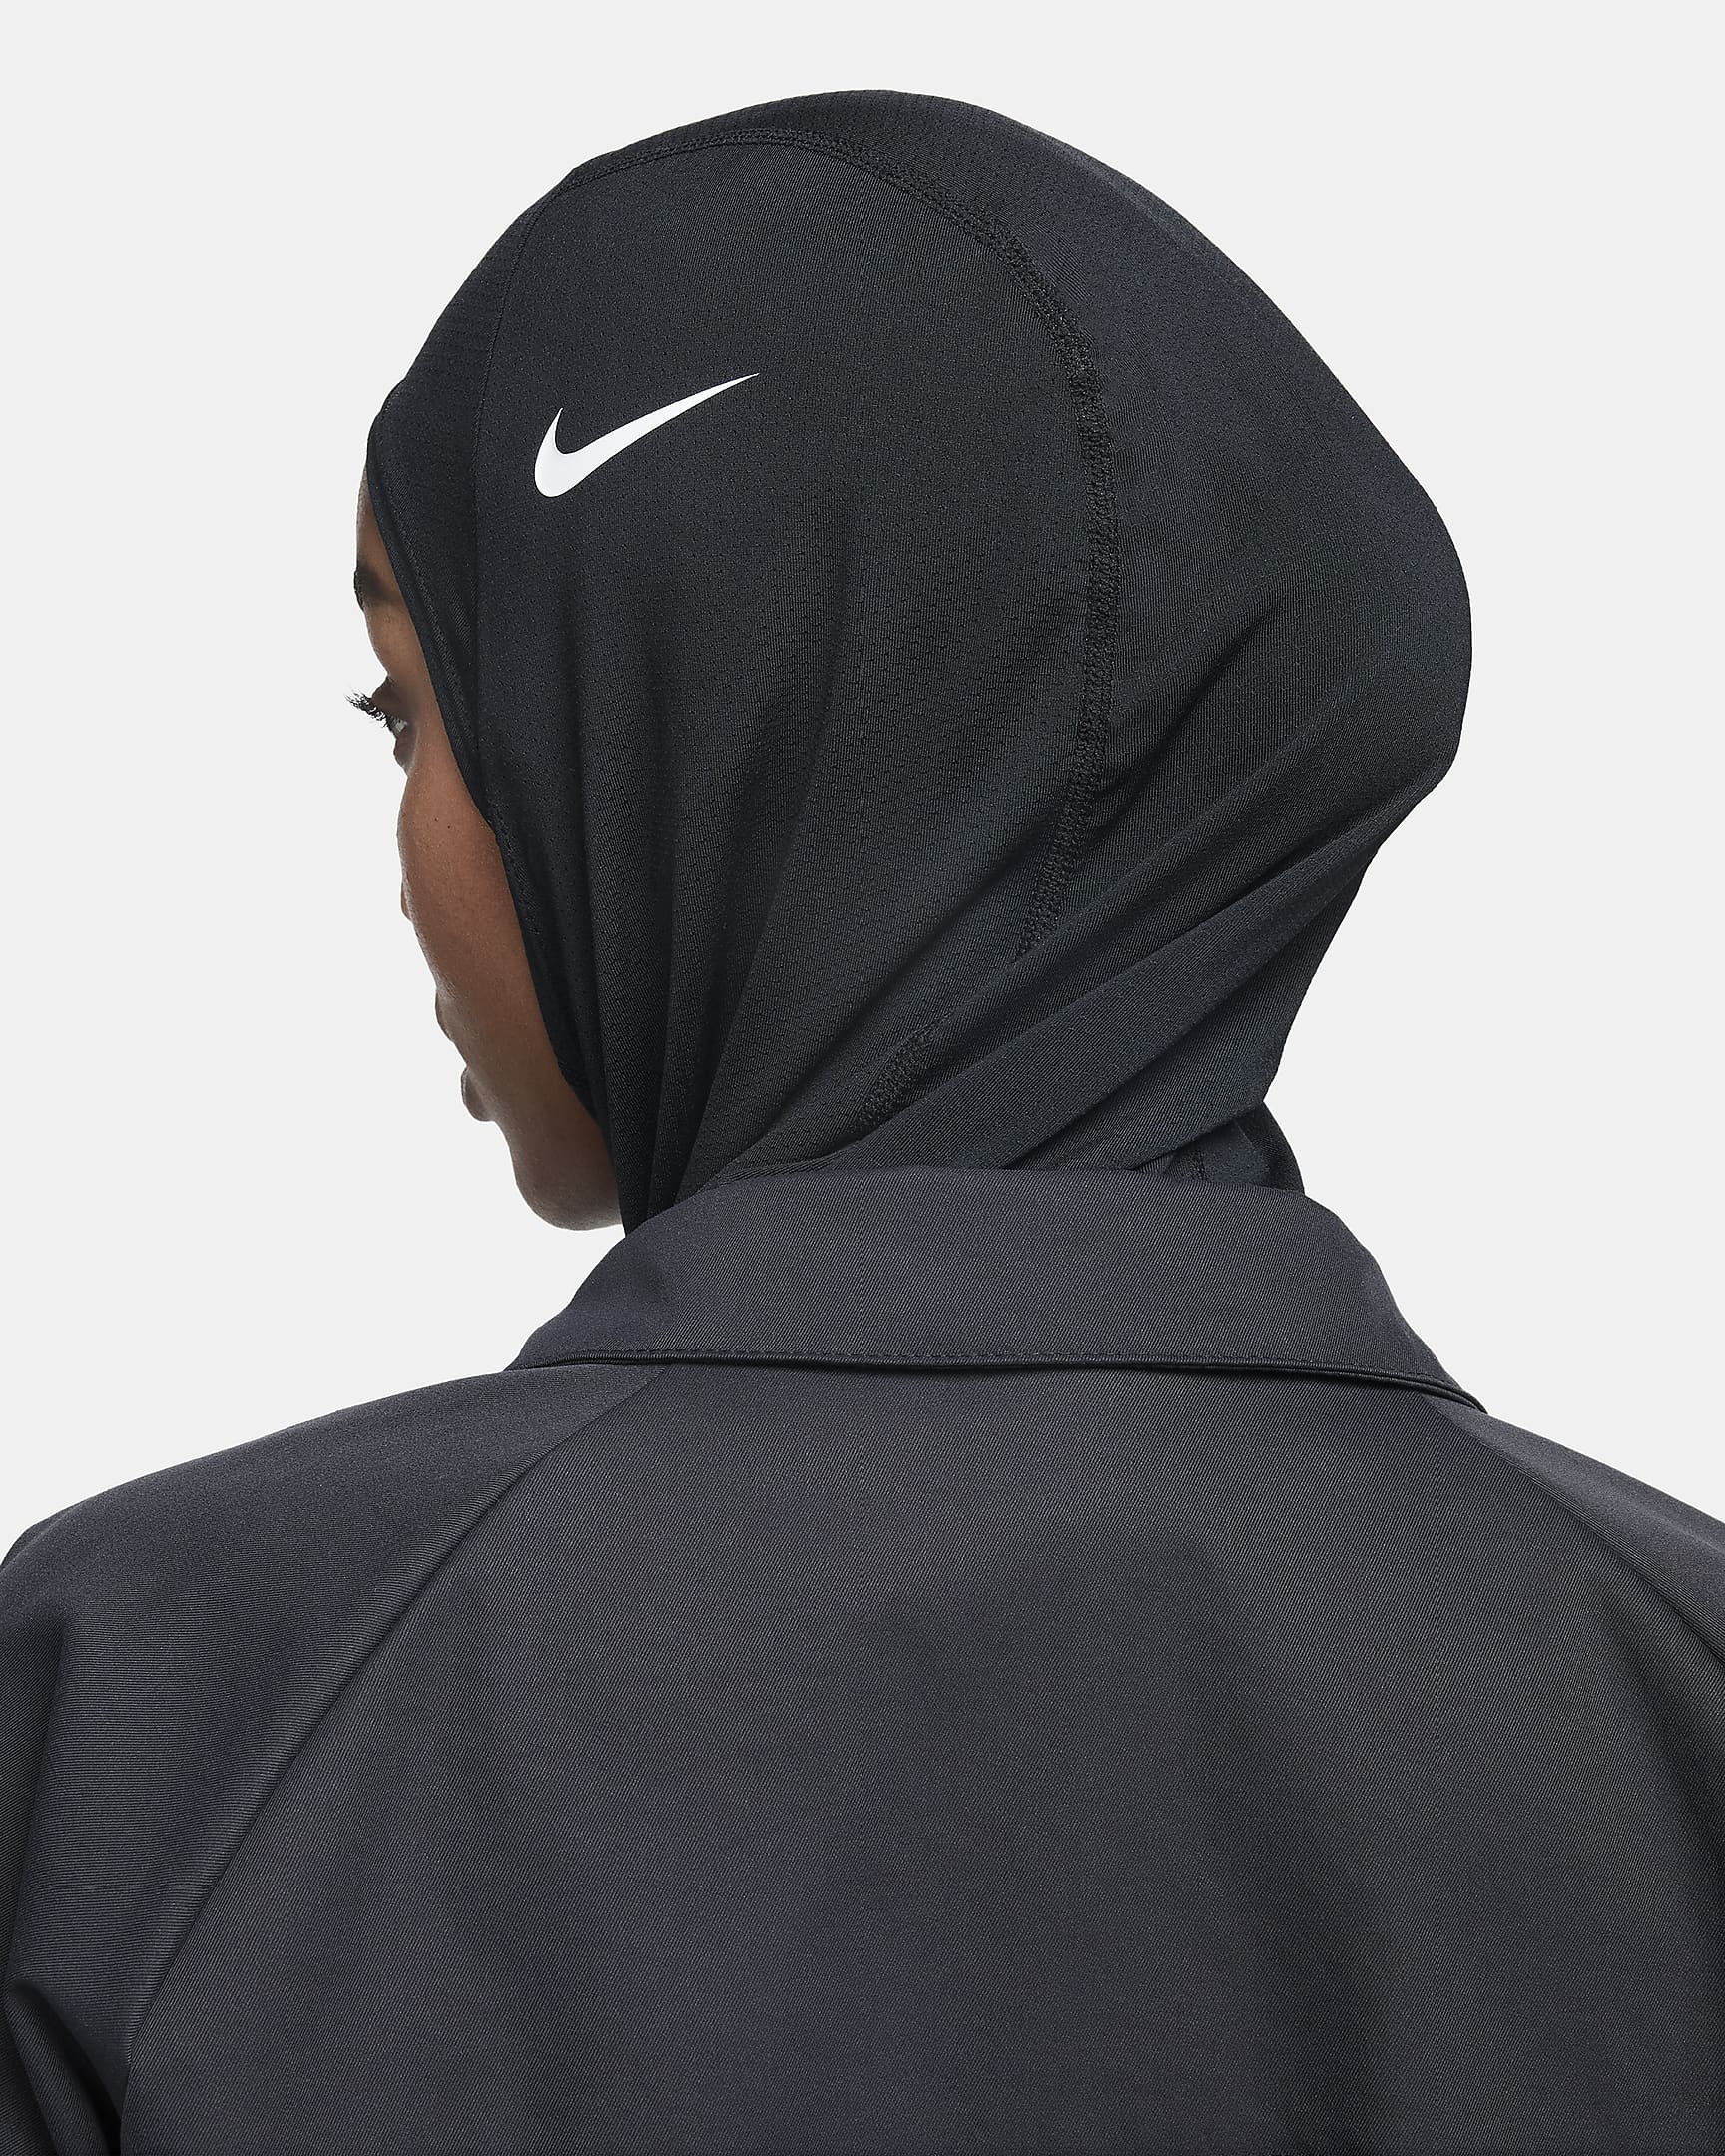 Nike Pro Hijab. Nike.com